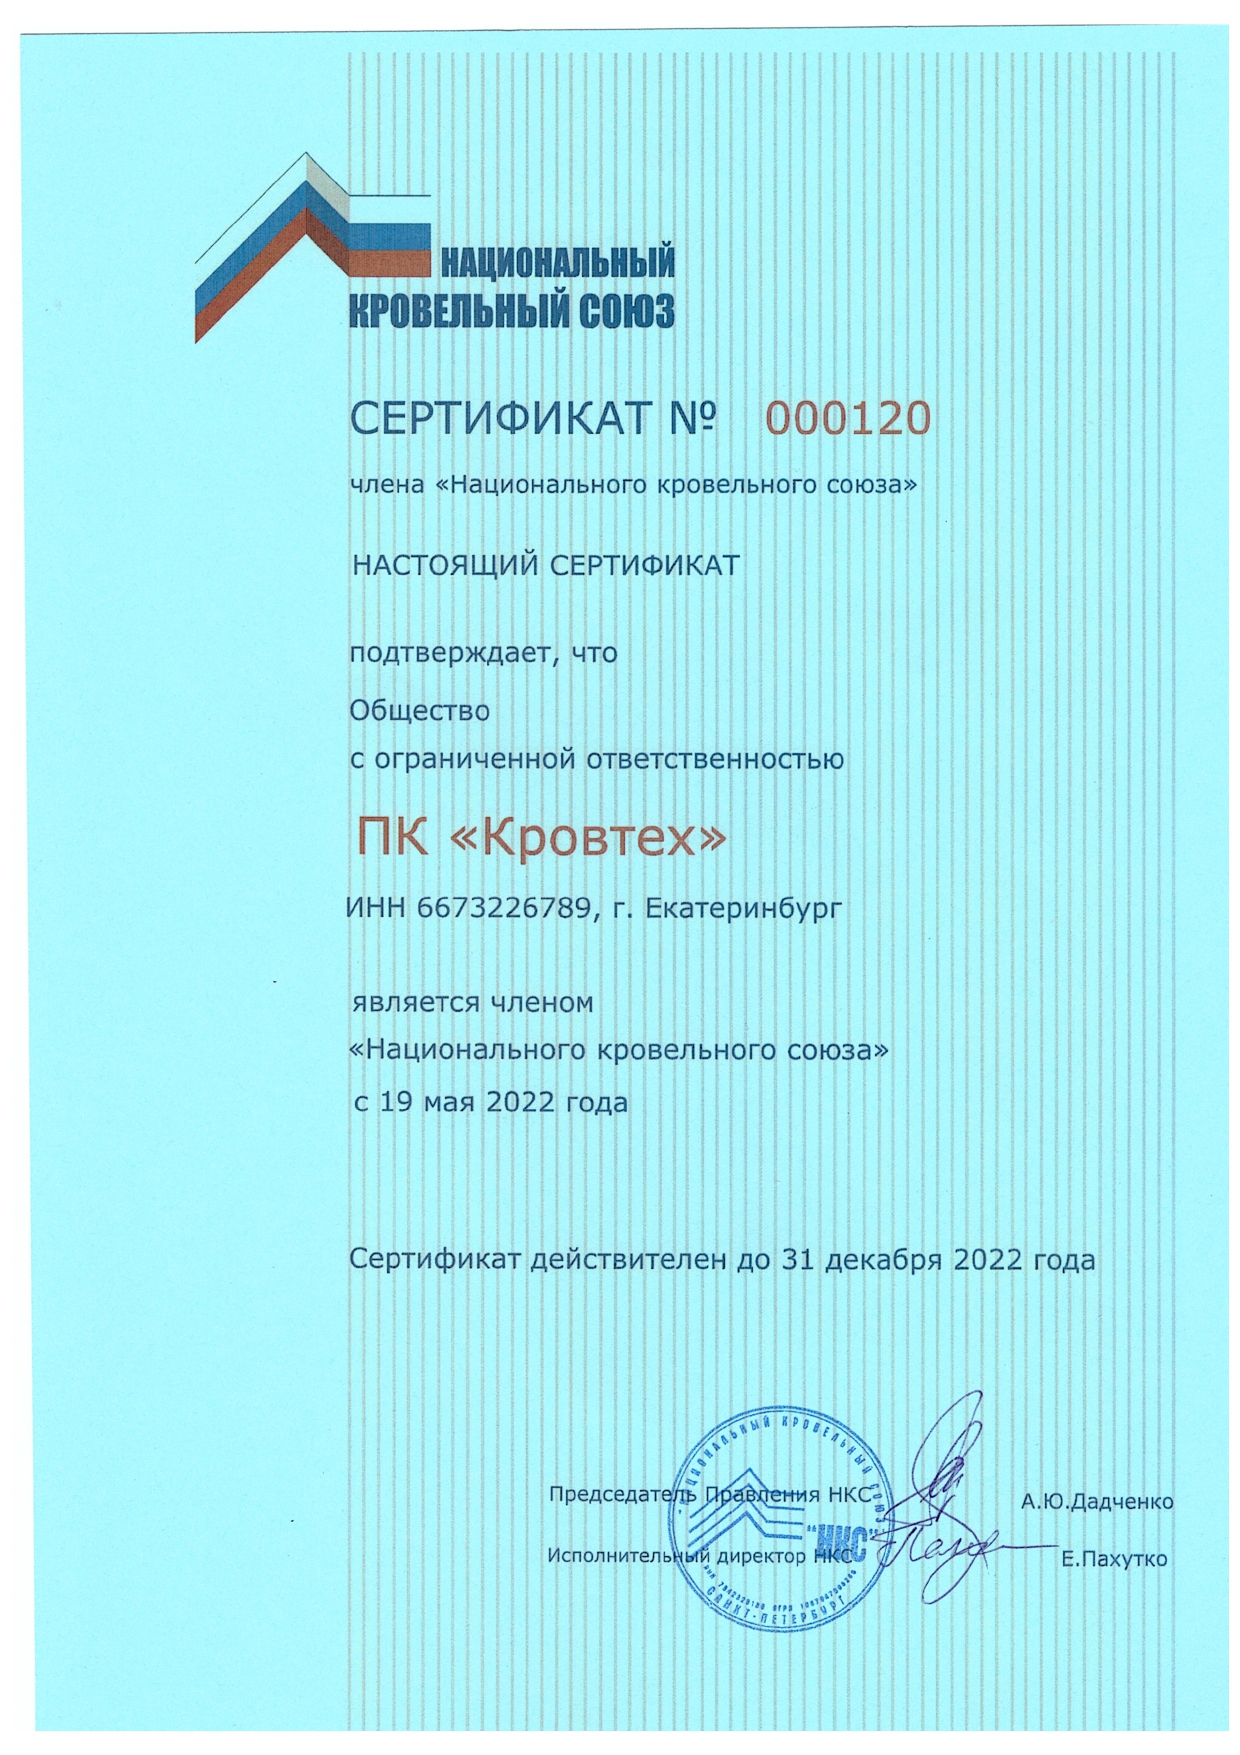 Сертификат члена Национального кровельного союза